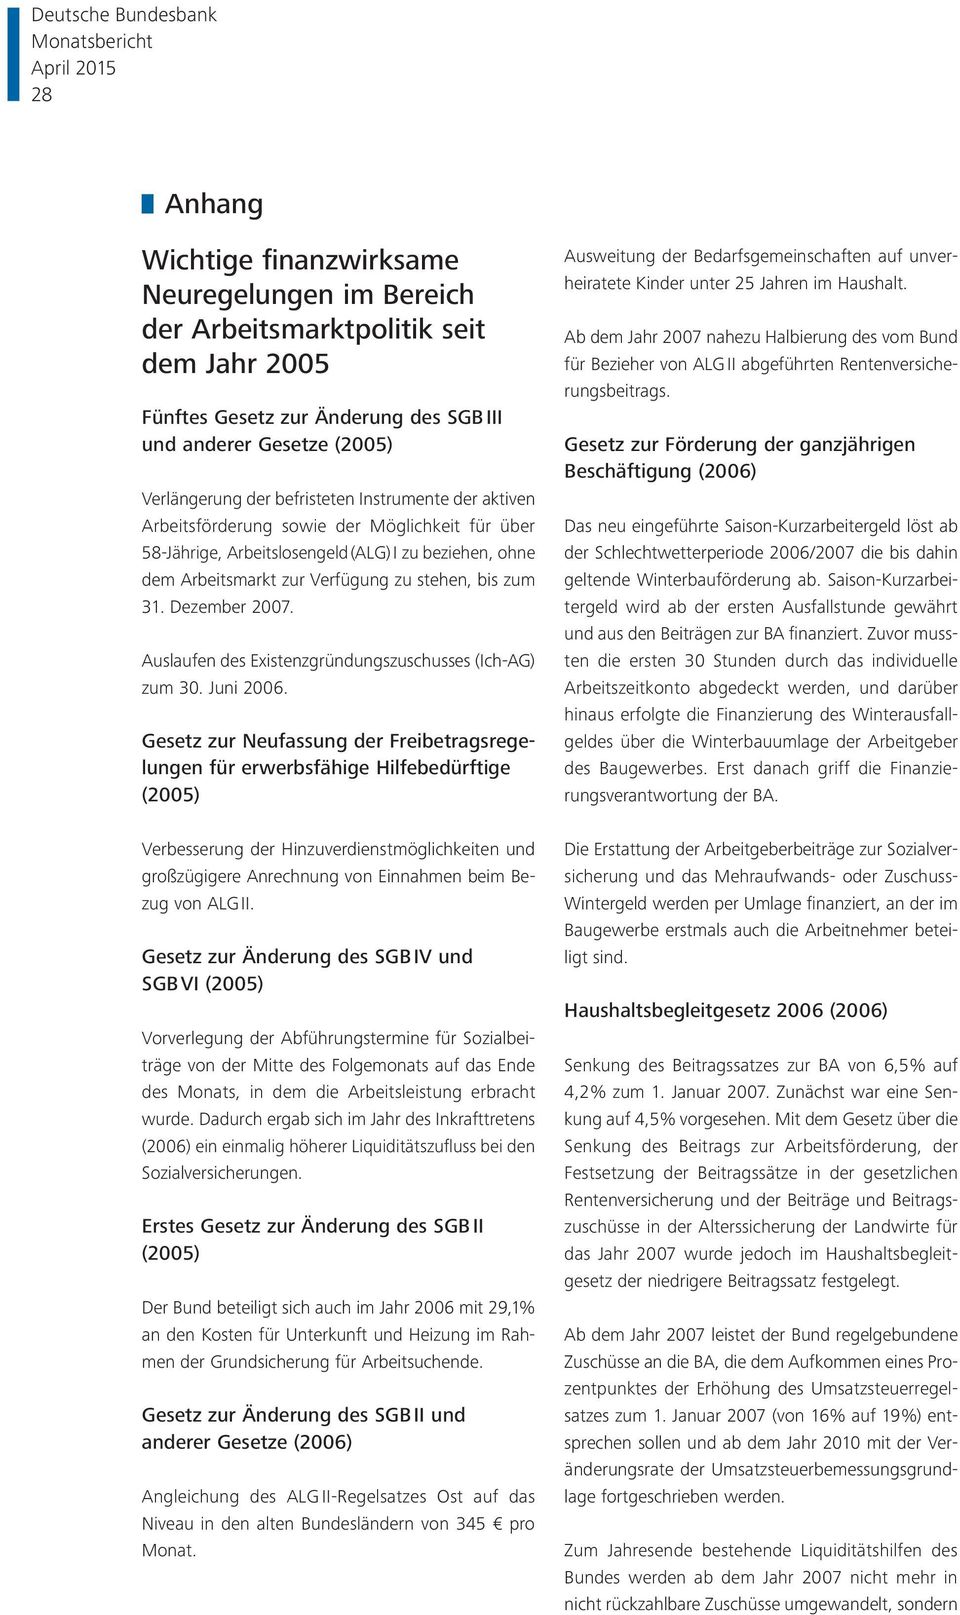 Auslaufen des Existenzgründungszuschusses (Ich-AG) zum 30. Juni 2006.